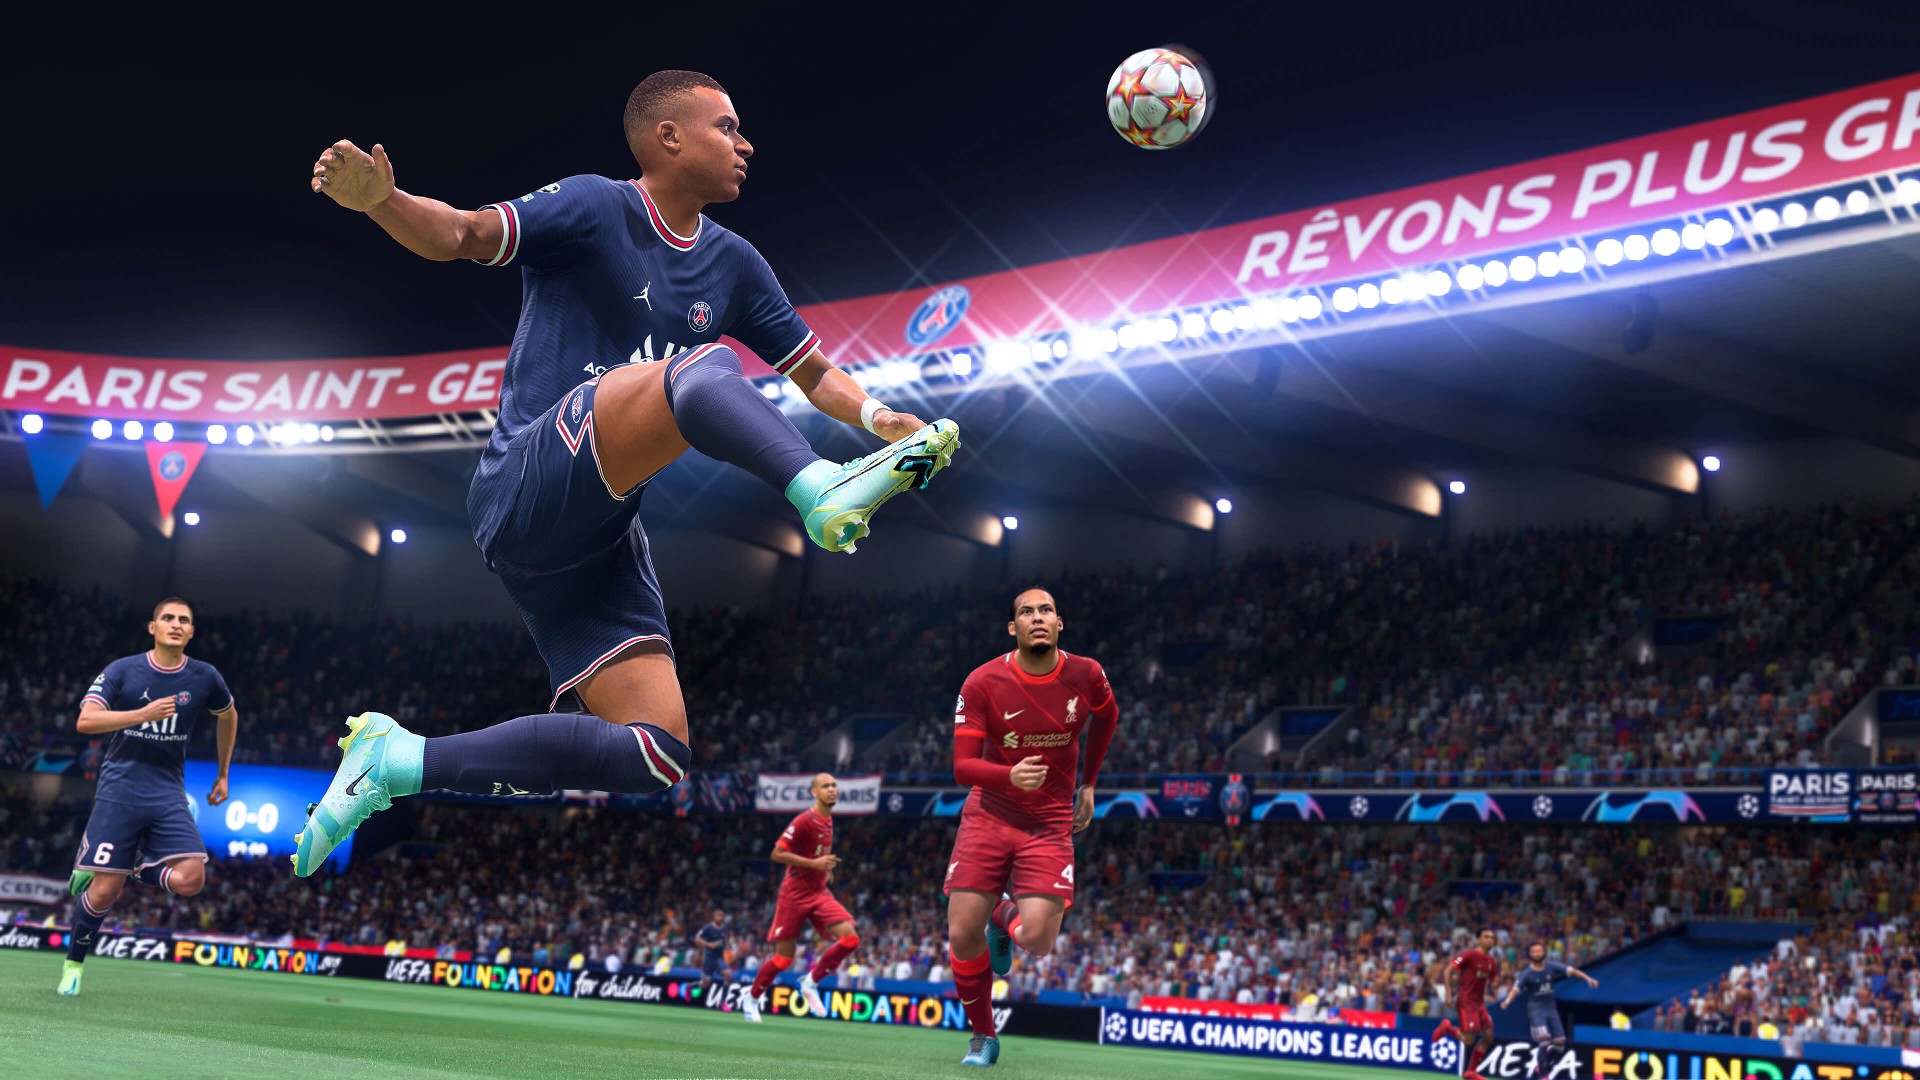 Ανακοινώθηκε επίσημα το FIFA 22, με όλες τις σχετικές πληροφορίες